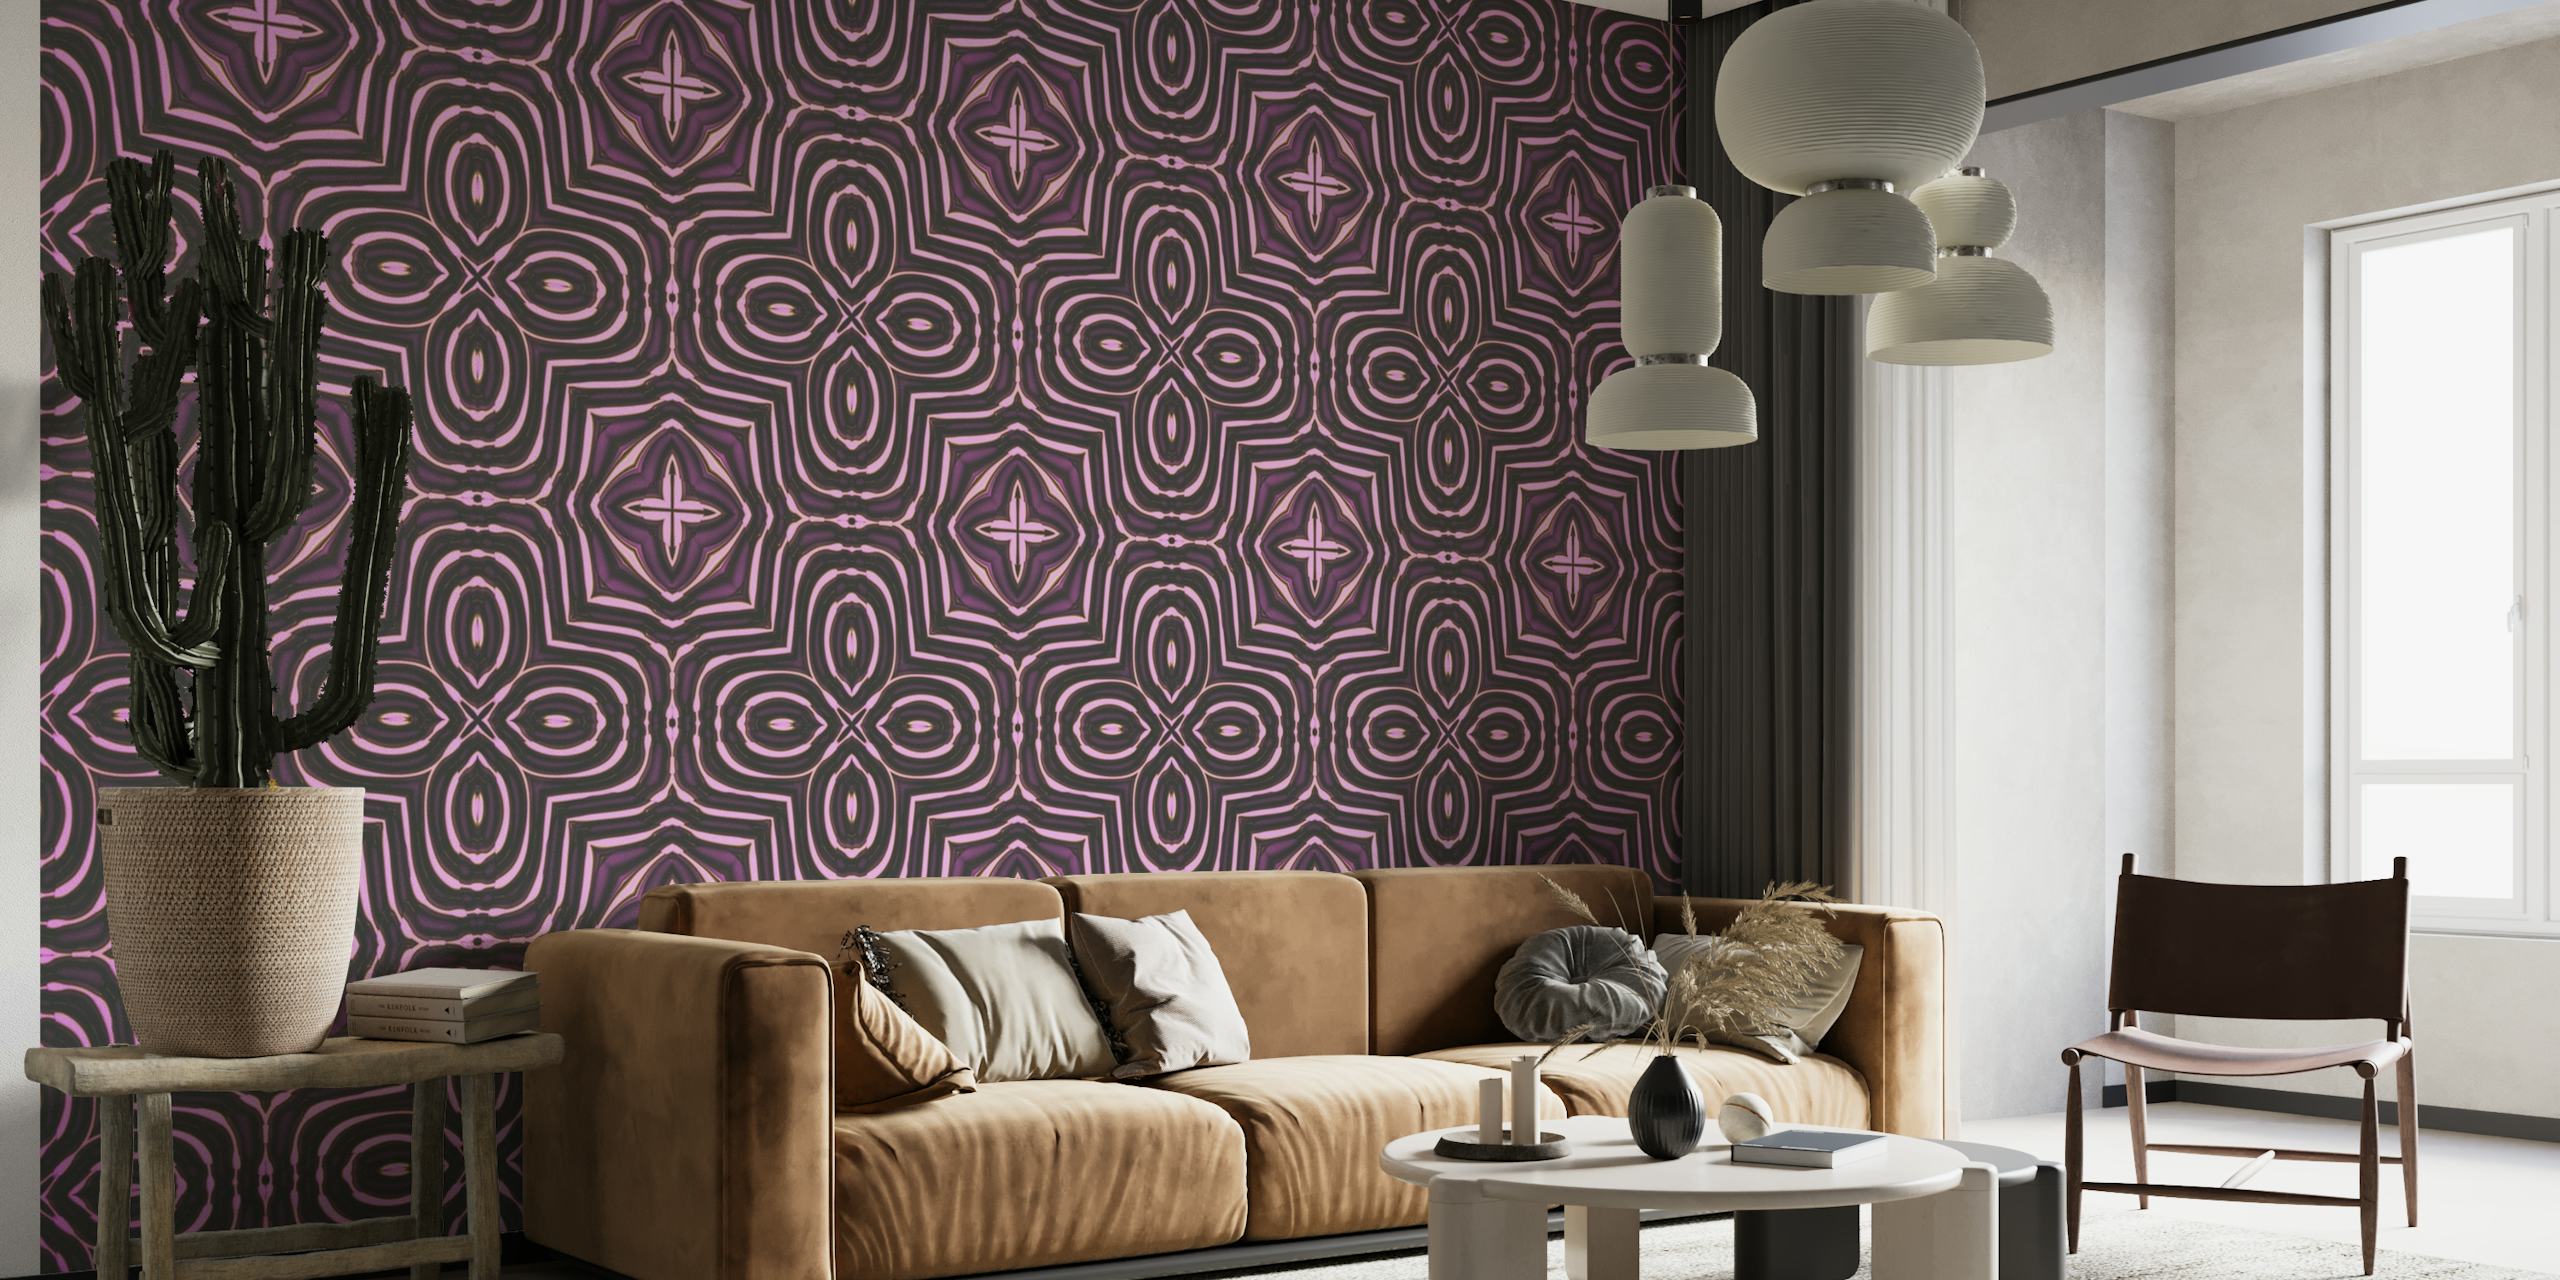 Fototapete mit orientalischem Fliesenmuster und komplizierten geometrischen Mustern in violetten Farbtönen